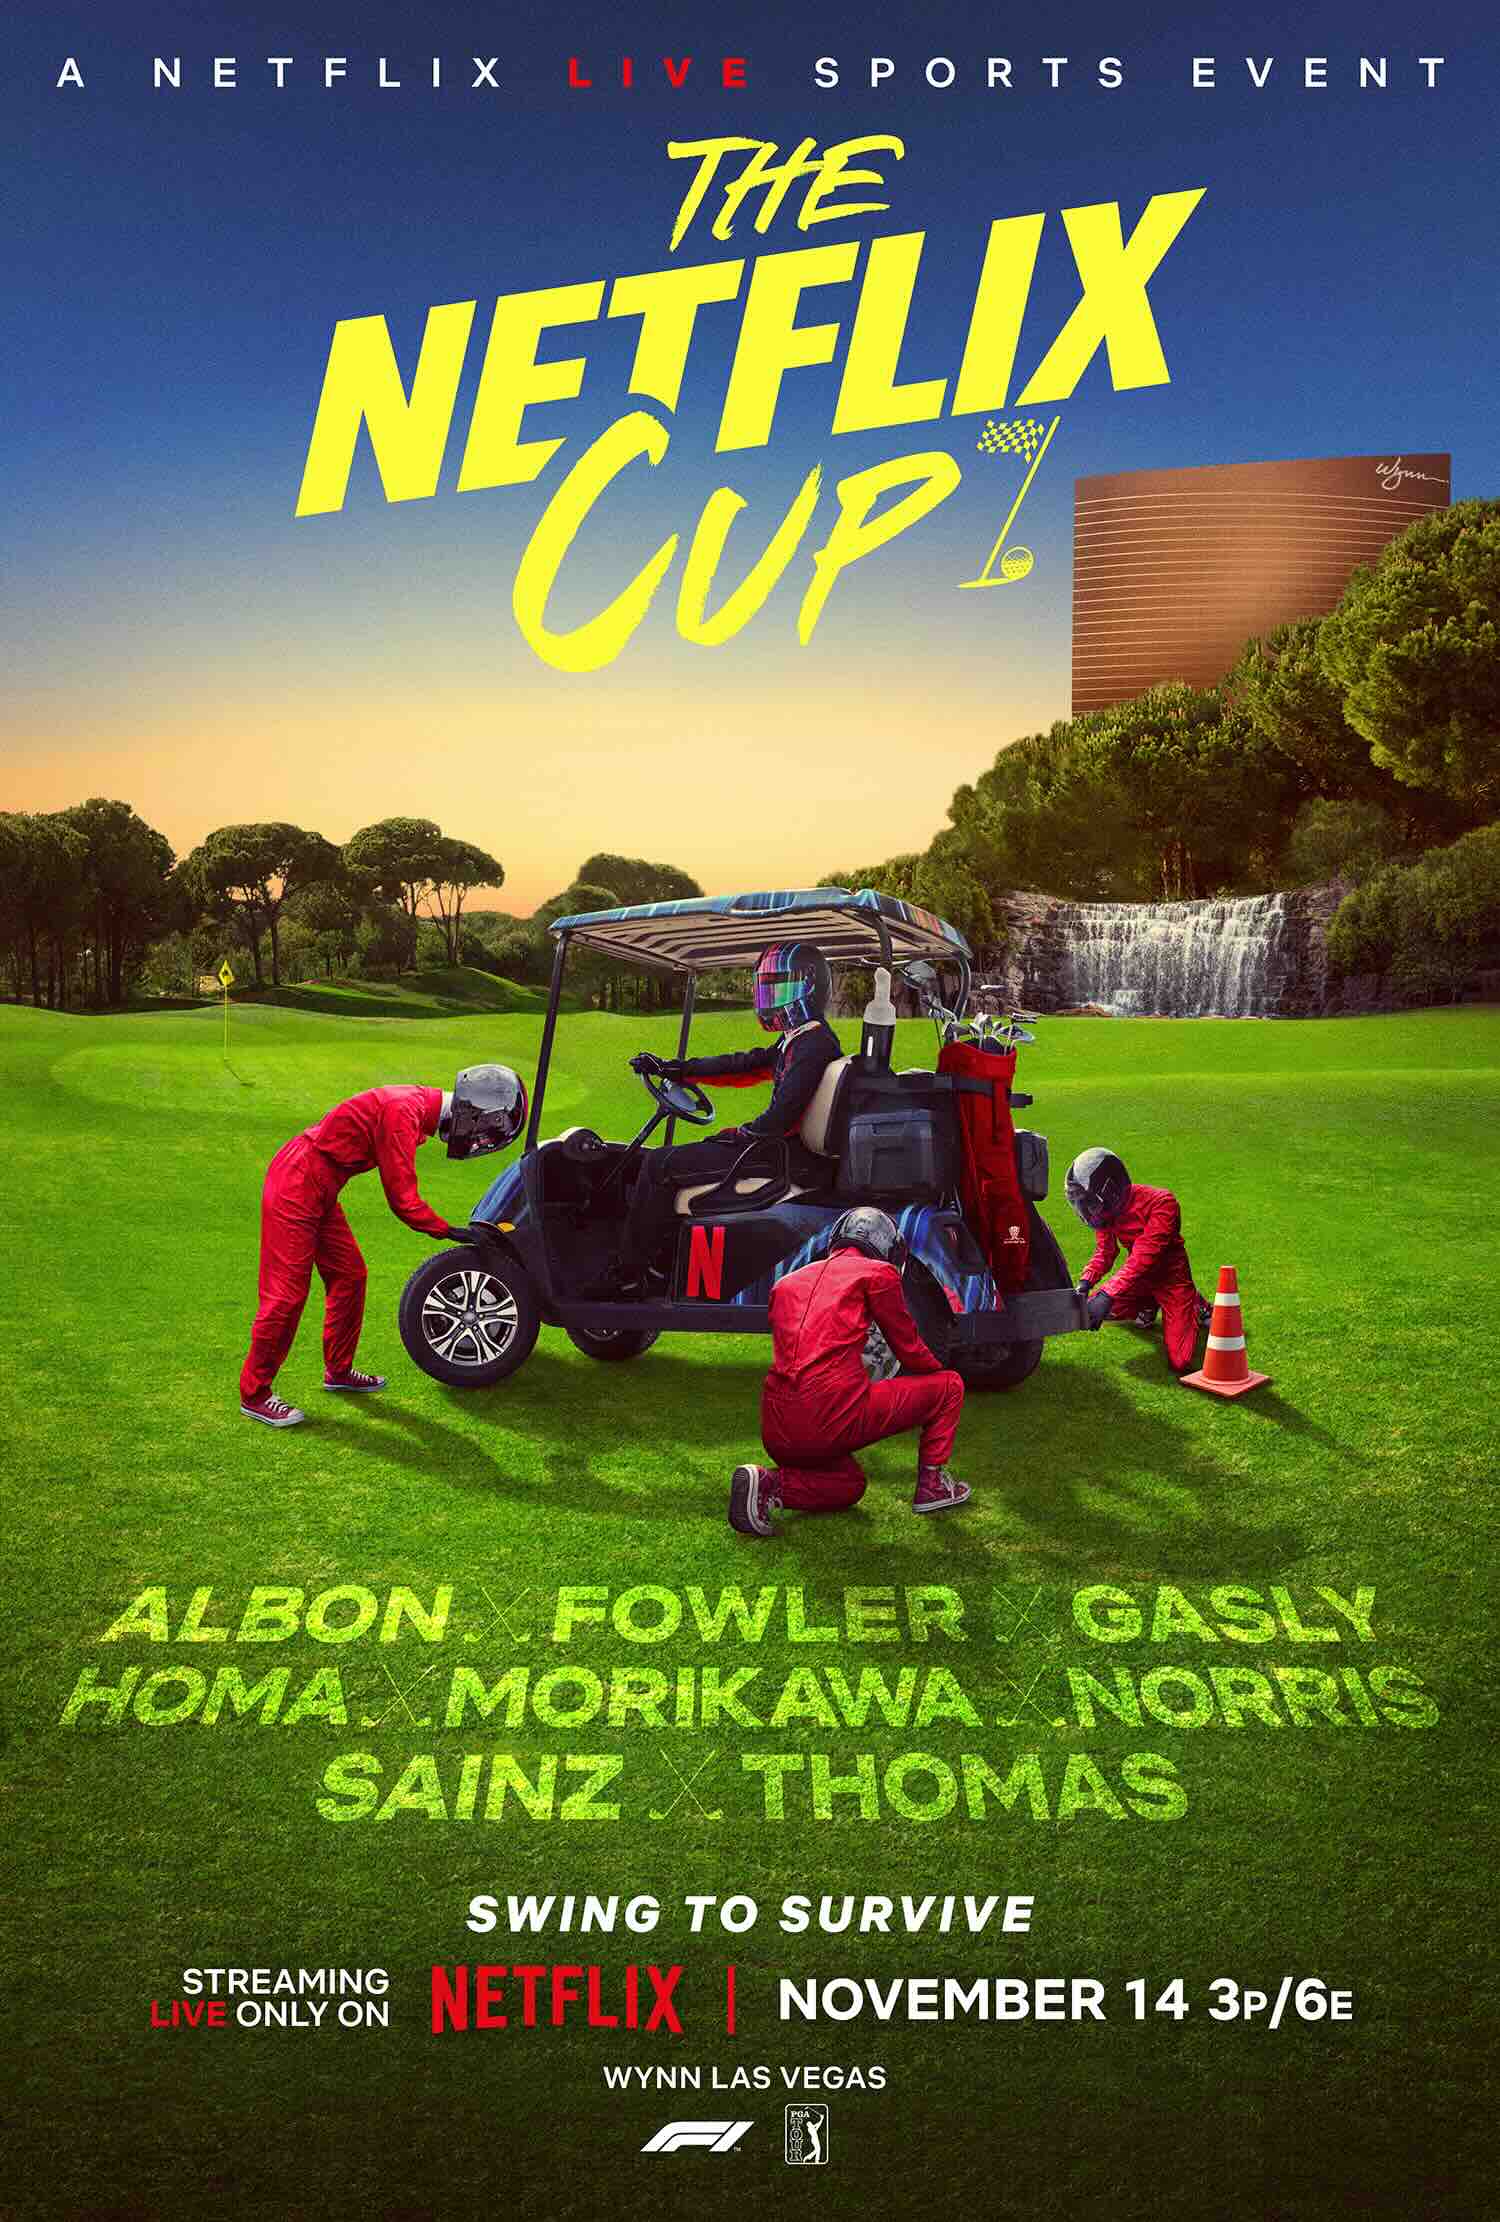 the netflix cup  - The Netflix Cup : la plateforme au N rouge lance son premier événement sportif en direct en novembre !